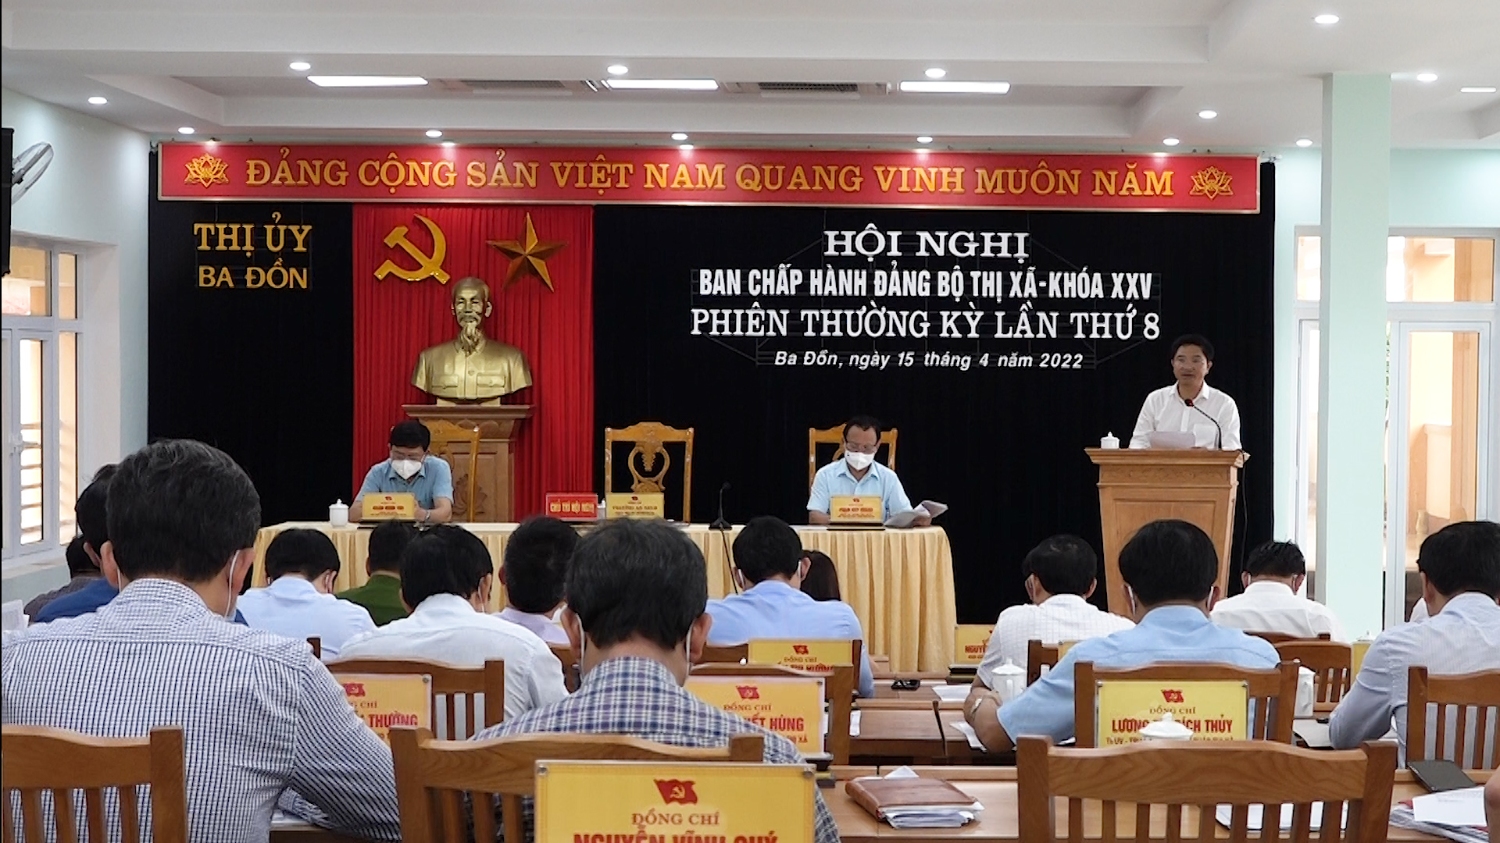 Toàn cảnh hội nghị BCH Đảng bộ thị xã Khóa XXV  phiên họp thường kỳ lần thứ 8